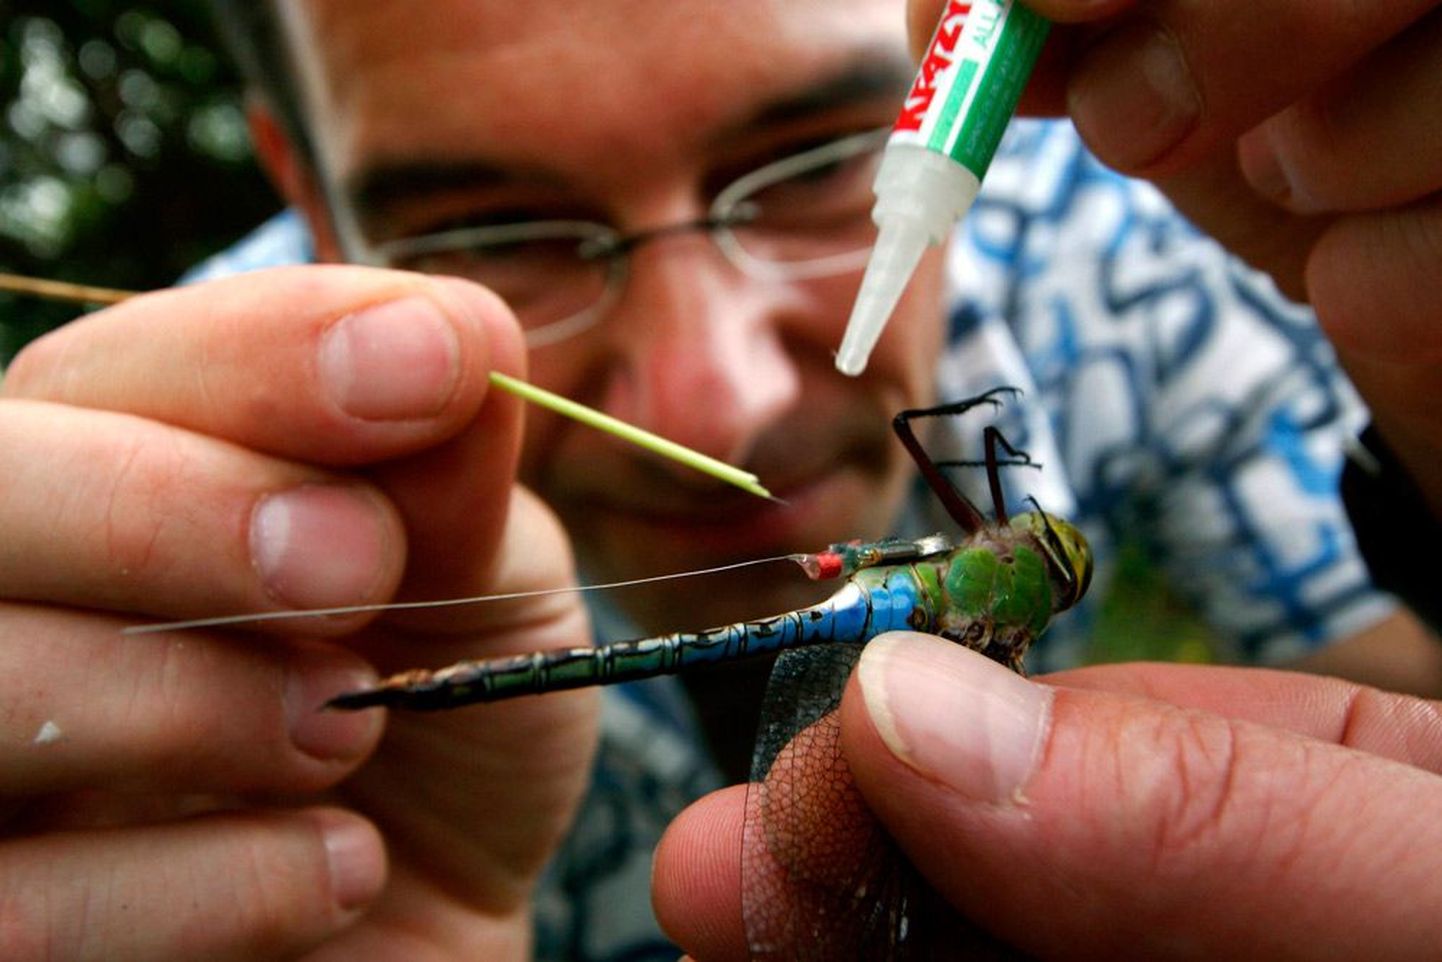 Martin Wikelski on uurinud ka putukate rännet, liimides neile seljale ülikerged raadiosaatjad. Tema laiem eesmärk on aga kokku panna atlas peamistest maakeral toimuvatest rännetest.